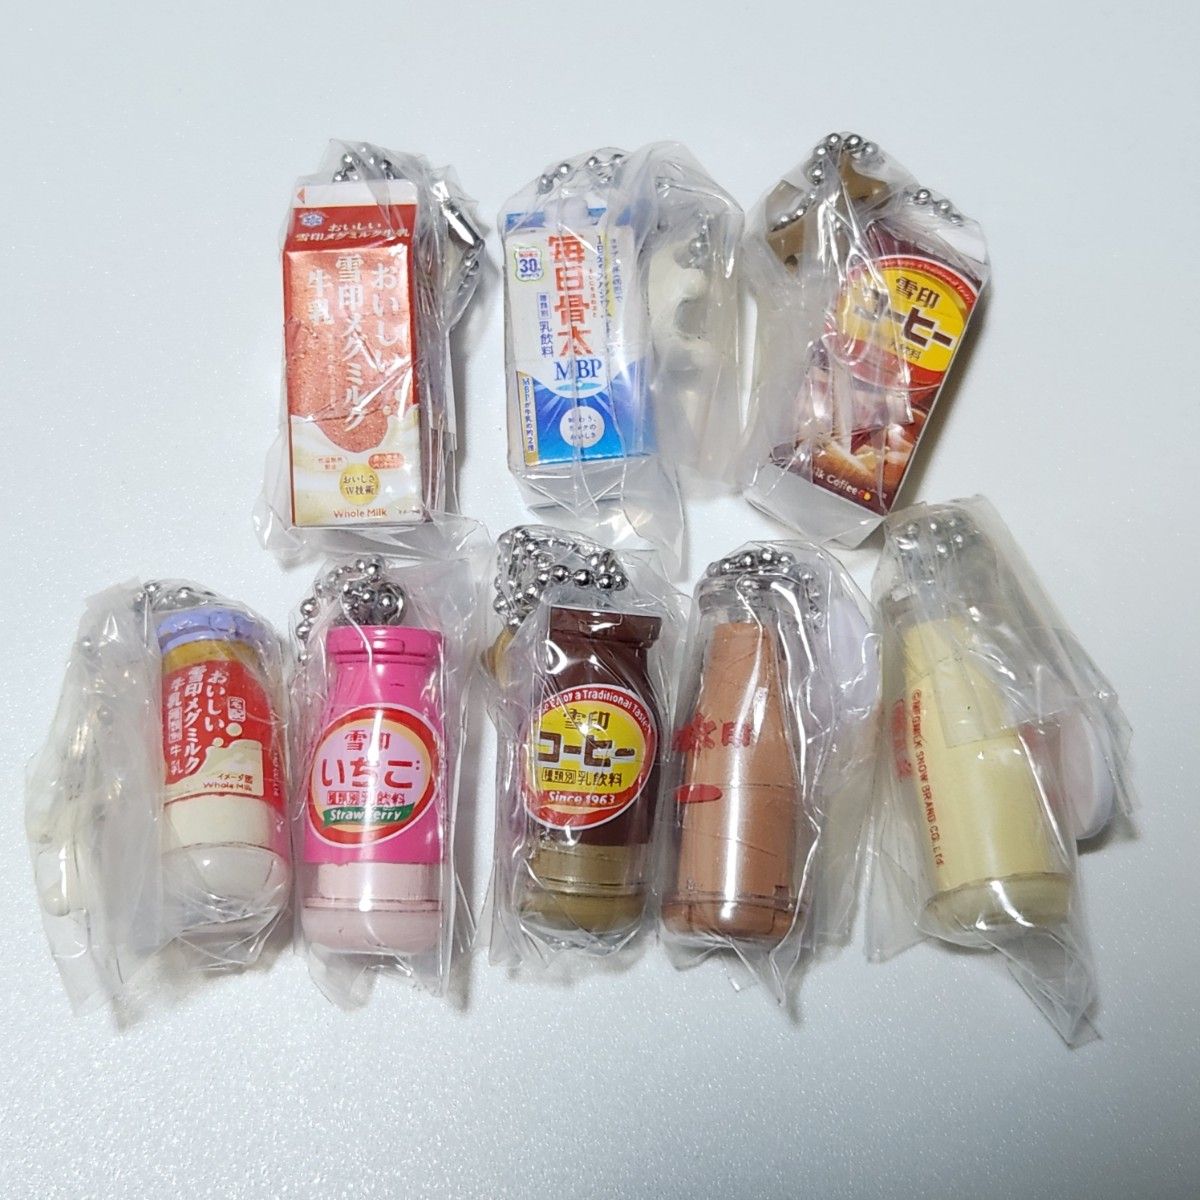 【新品】雪印メグミルク ミニチュアチャーム 乳飲料 8種セット  ガチャガチャ